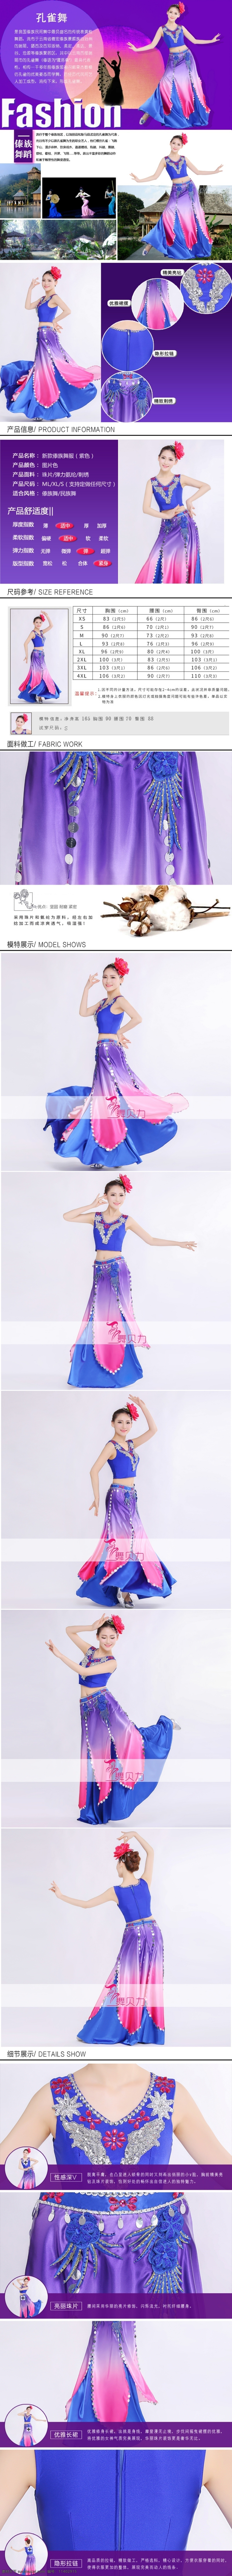 藏族 舞蹈 服 详情 页 淘宝素材 淘宝设计 淘宝模板下载 白色